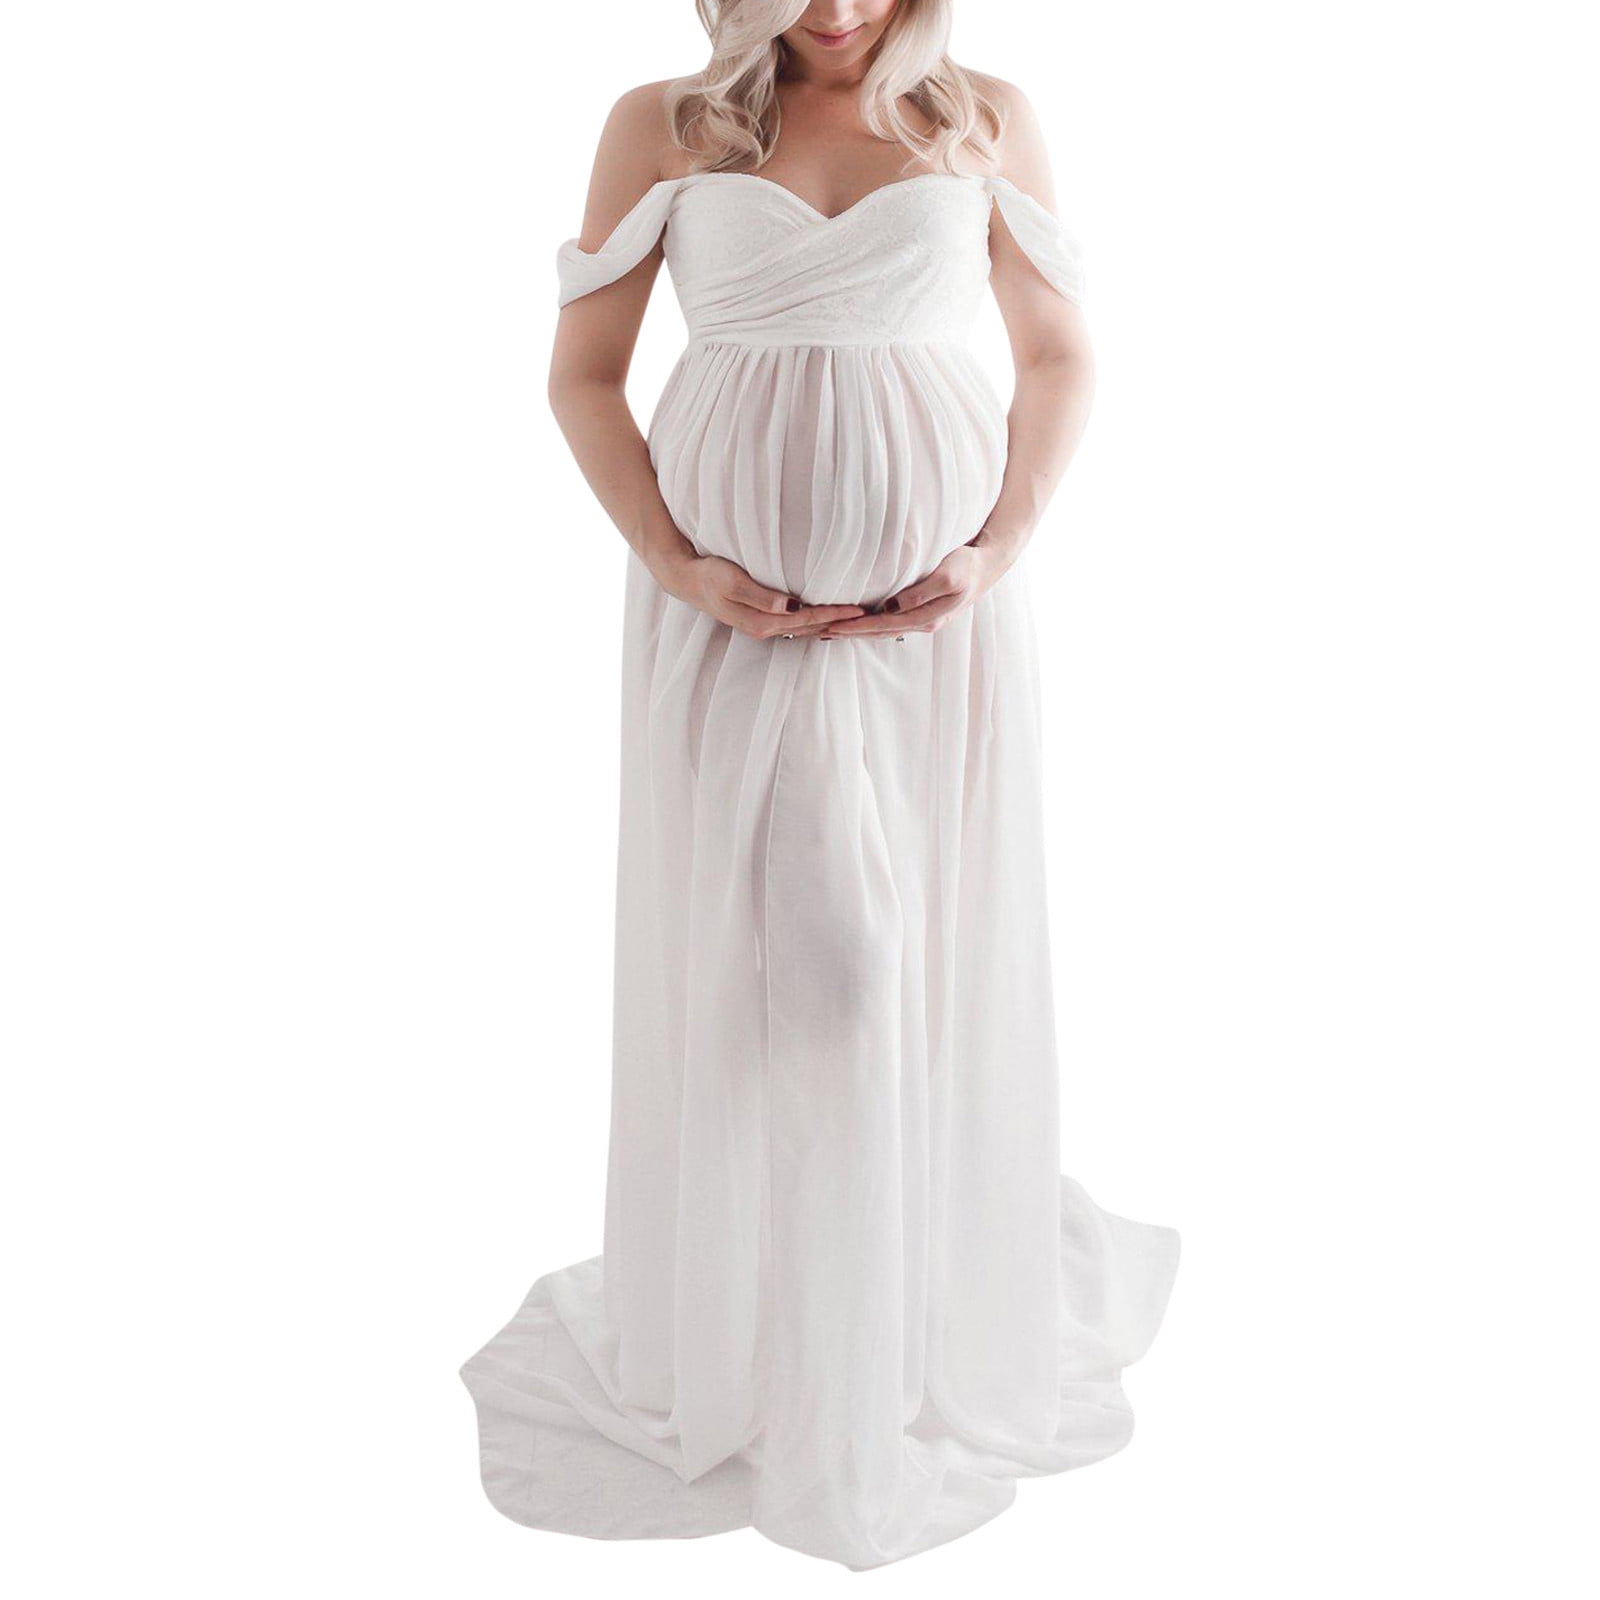 Vedolay Maternity Dress For Women Women's Maternity Long Dress